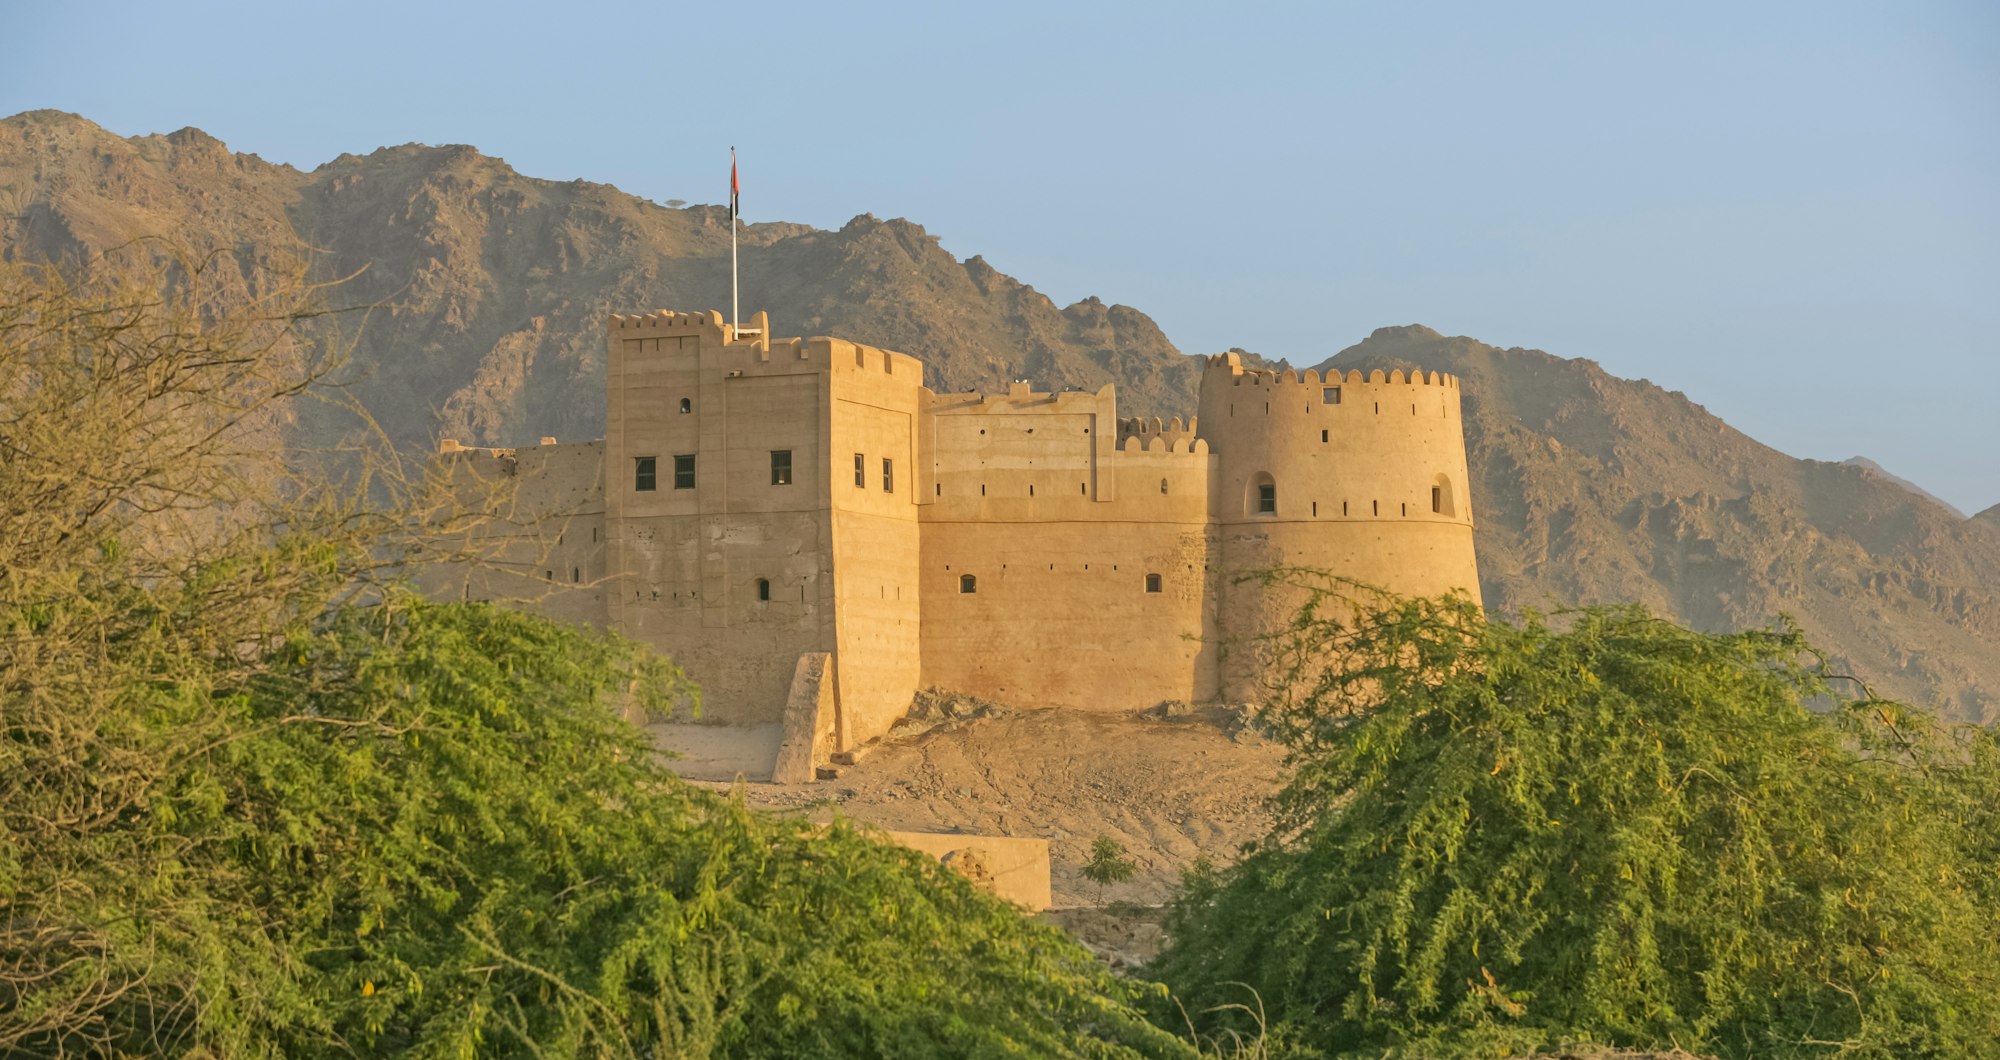 Fujairah Fort in the UAE